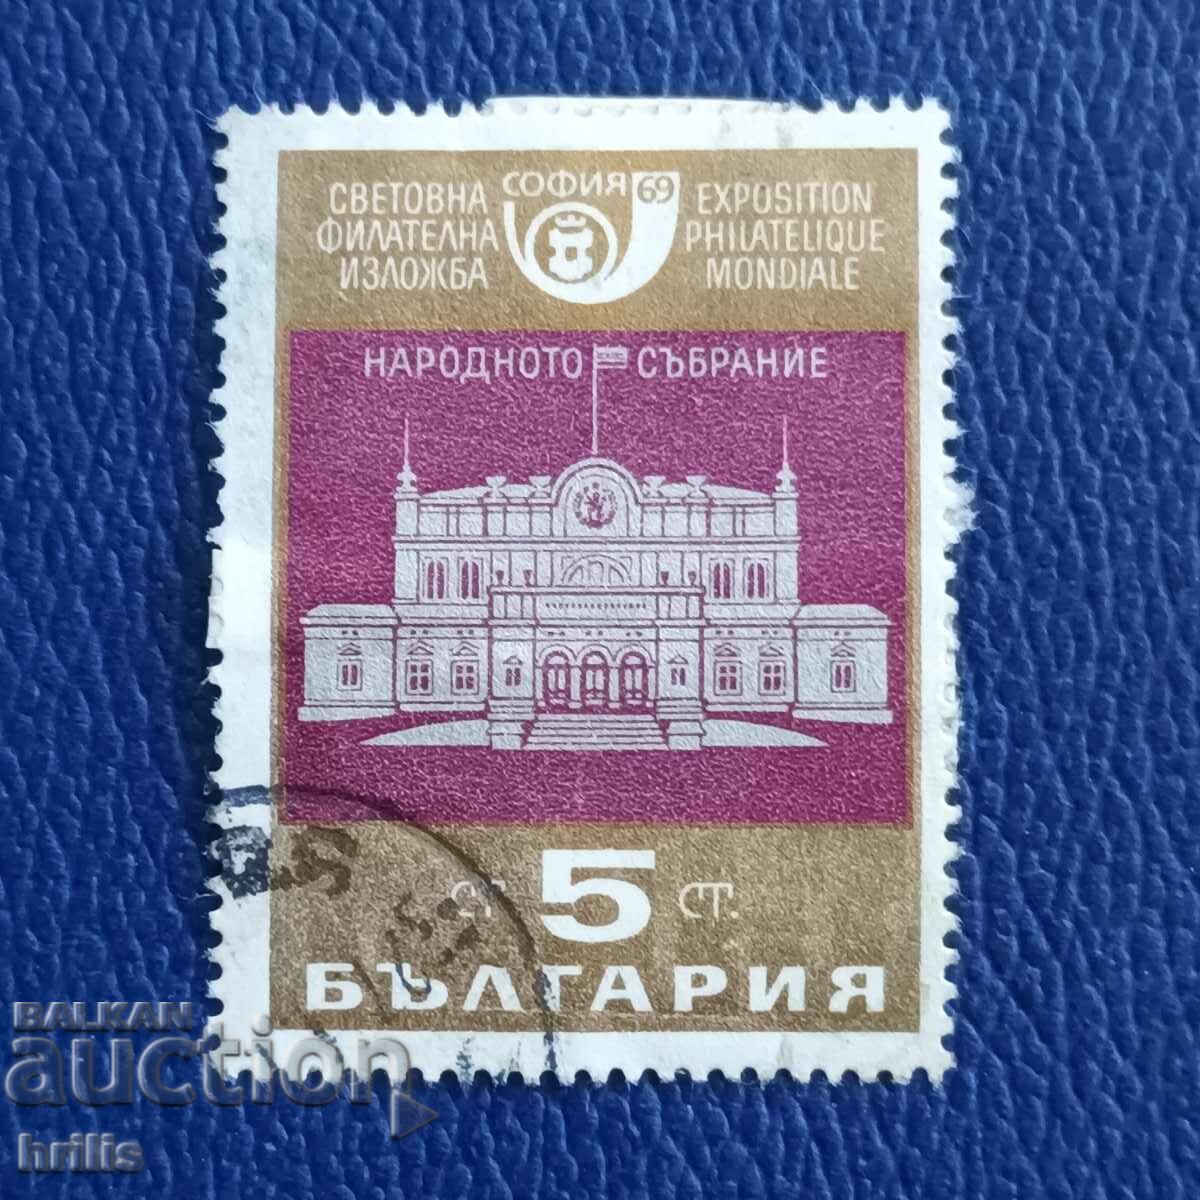 BULGARIA 1969 - Adunarea Națională